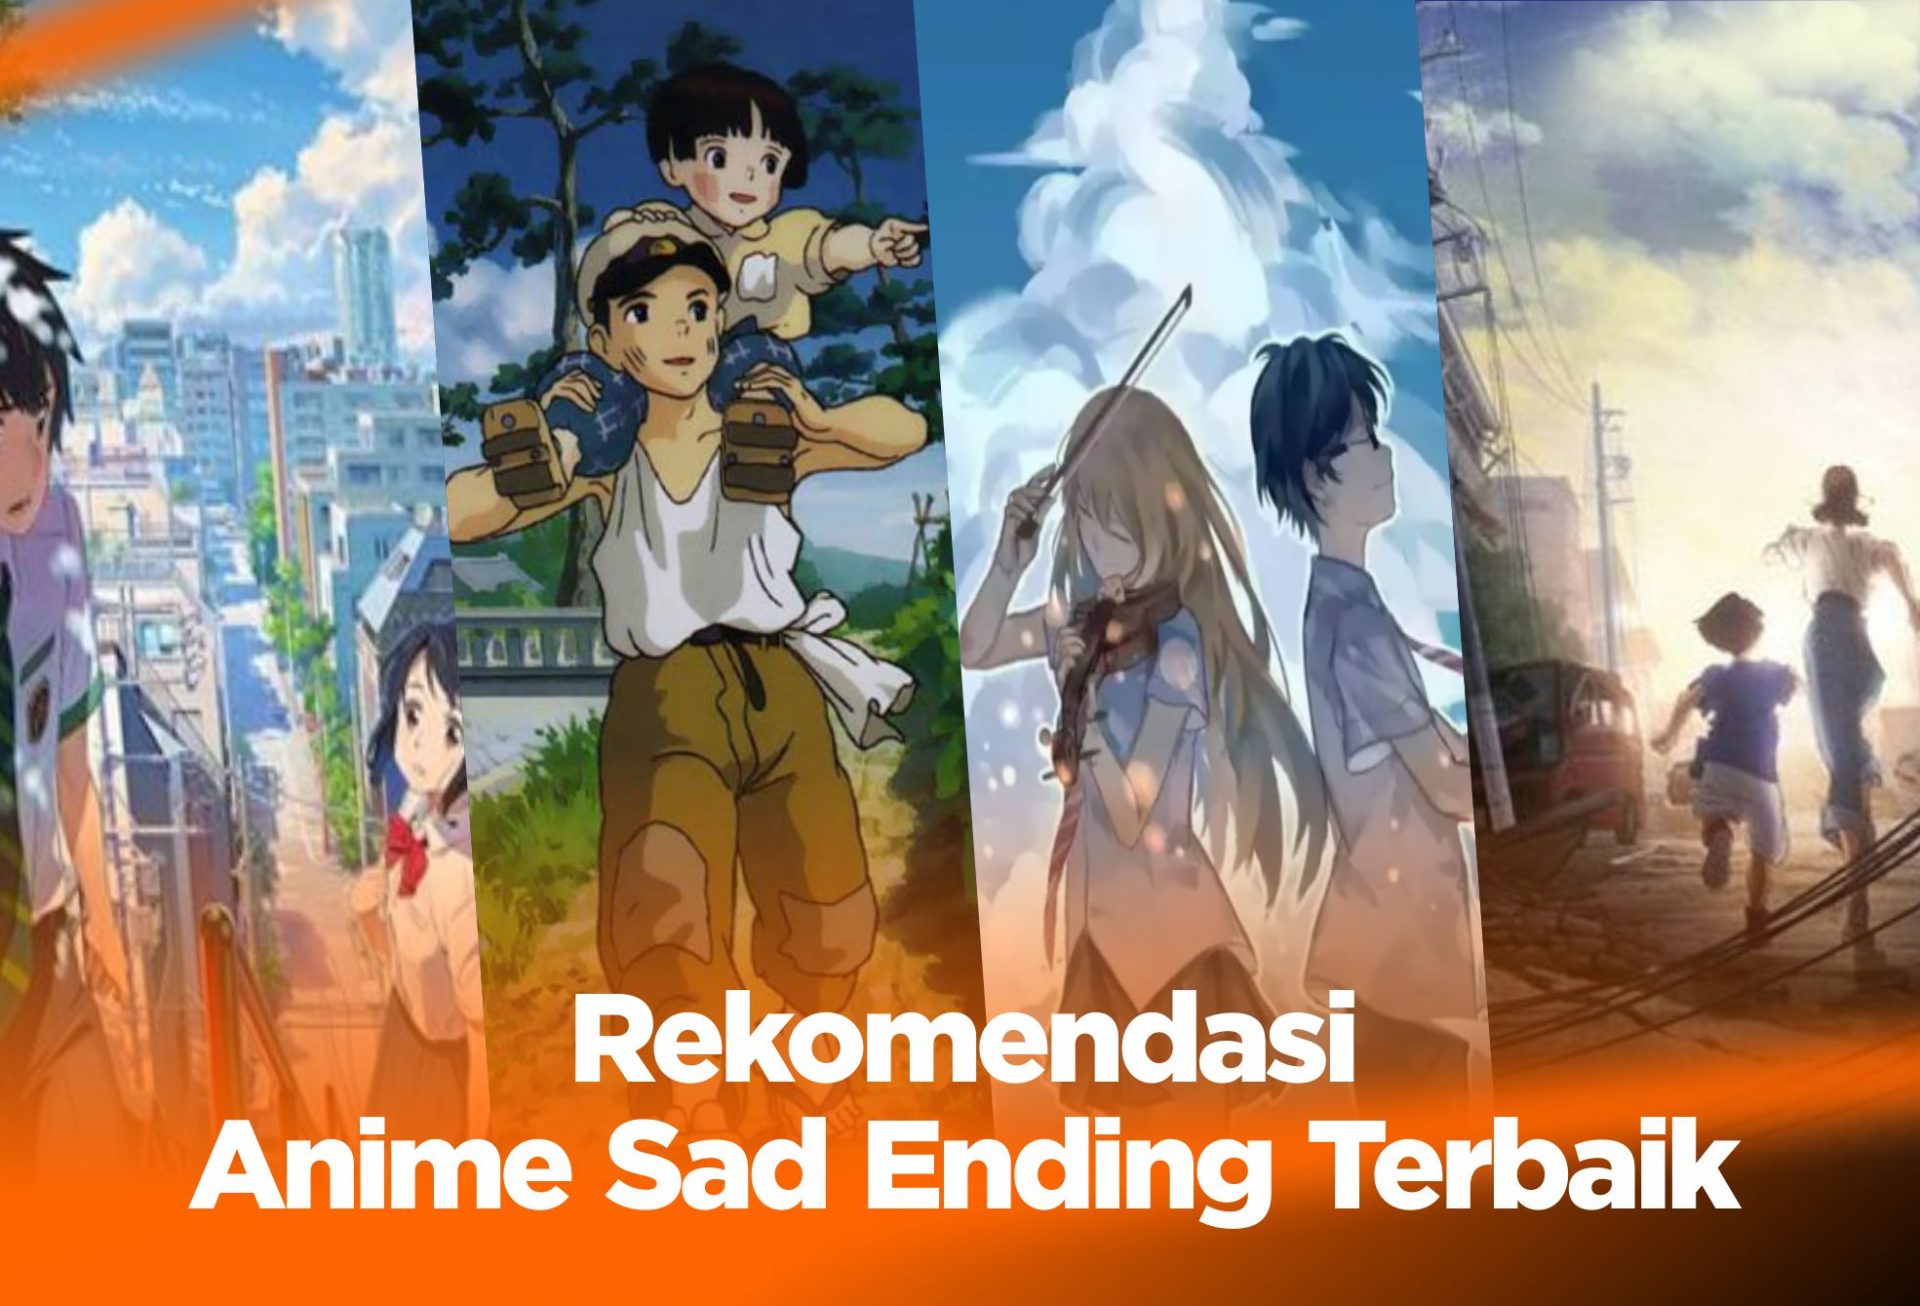 Rekomendasi Anime Romance Tapi Sad Ending  Tred Media